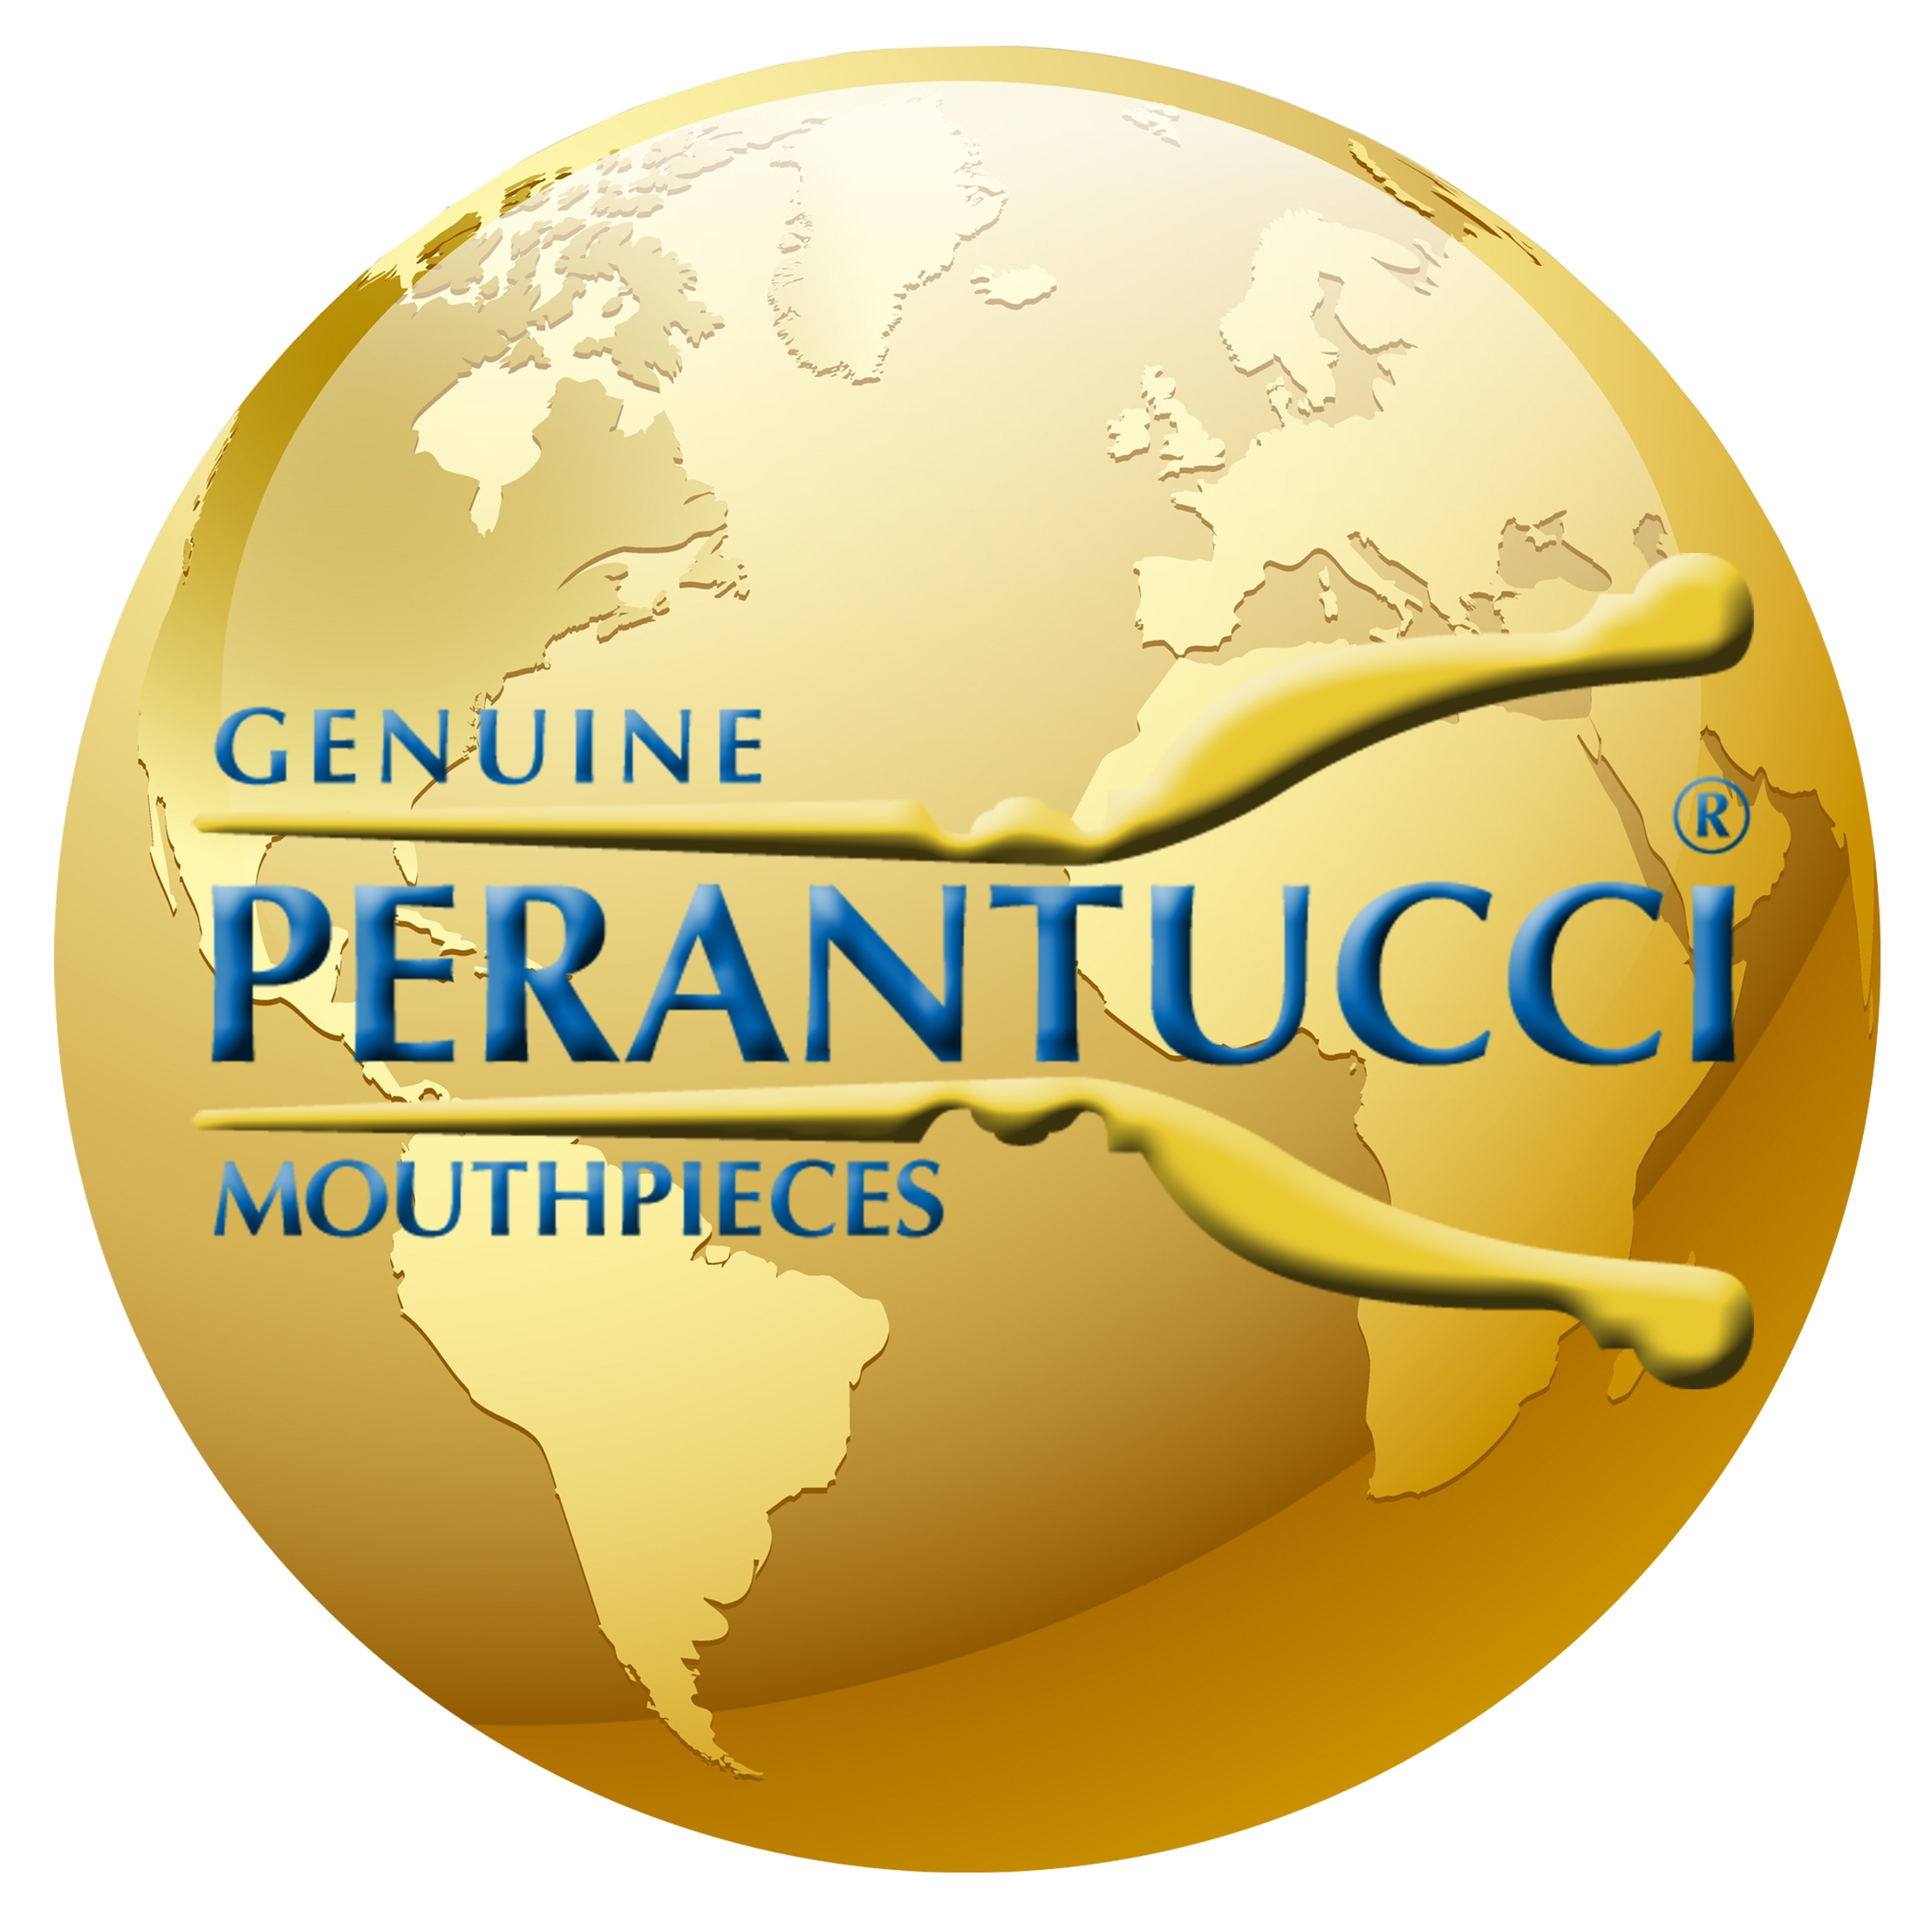 Perantucci